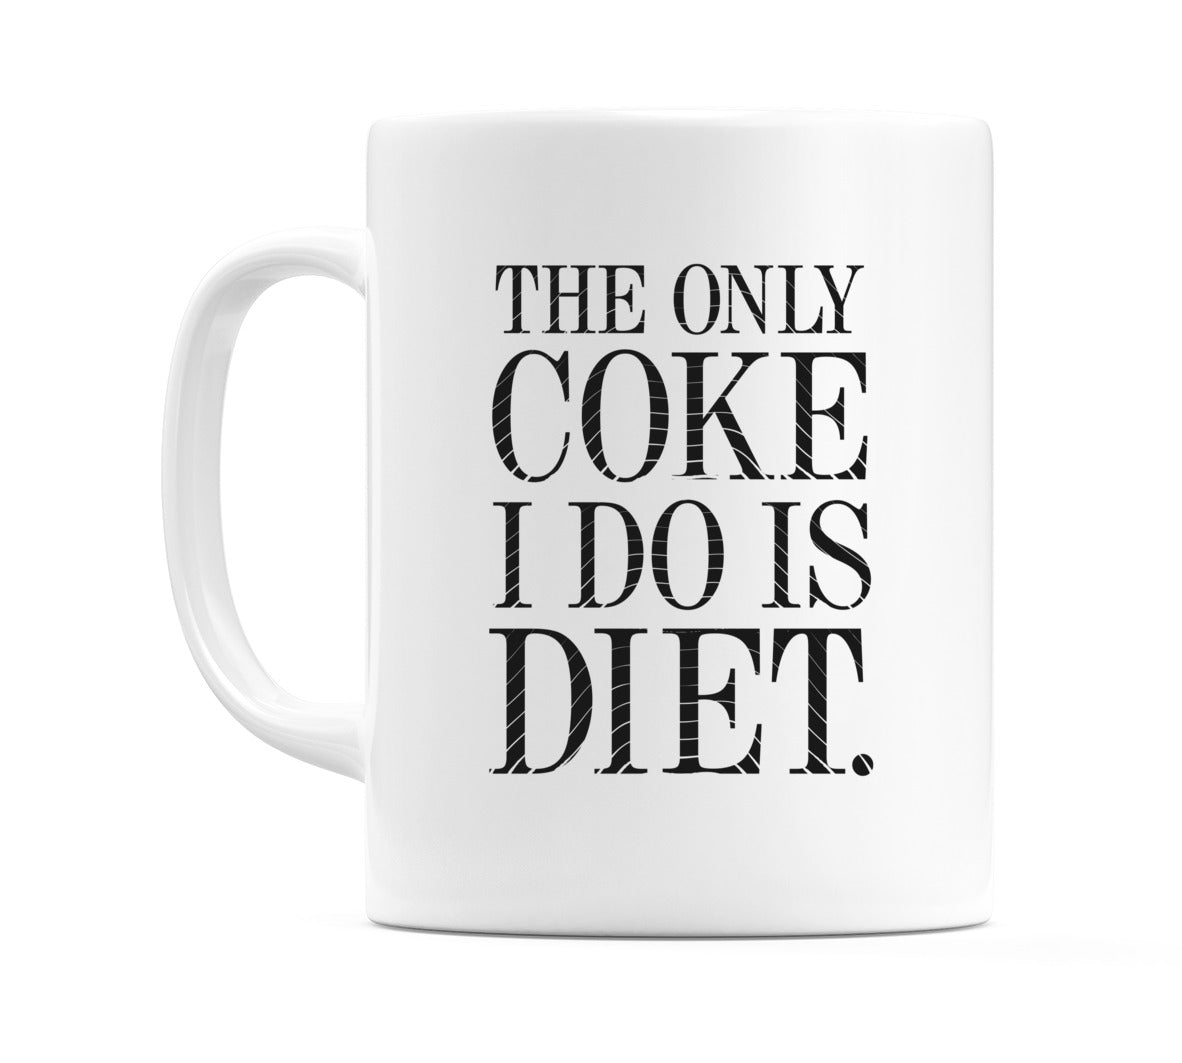 The Only Coke I Do Is Diet. Mug